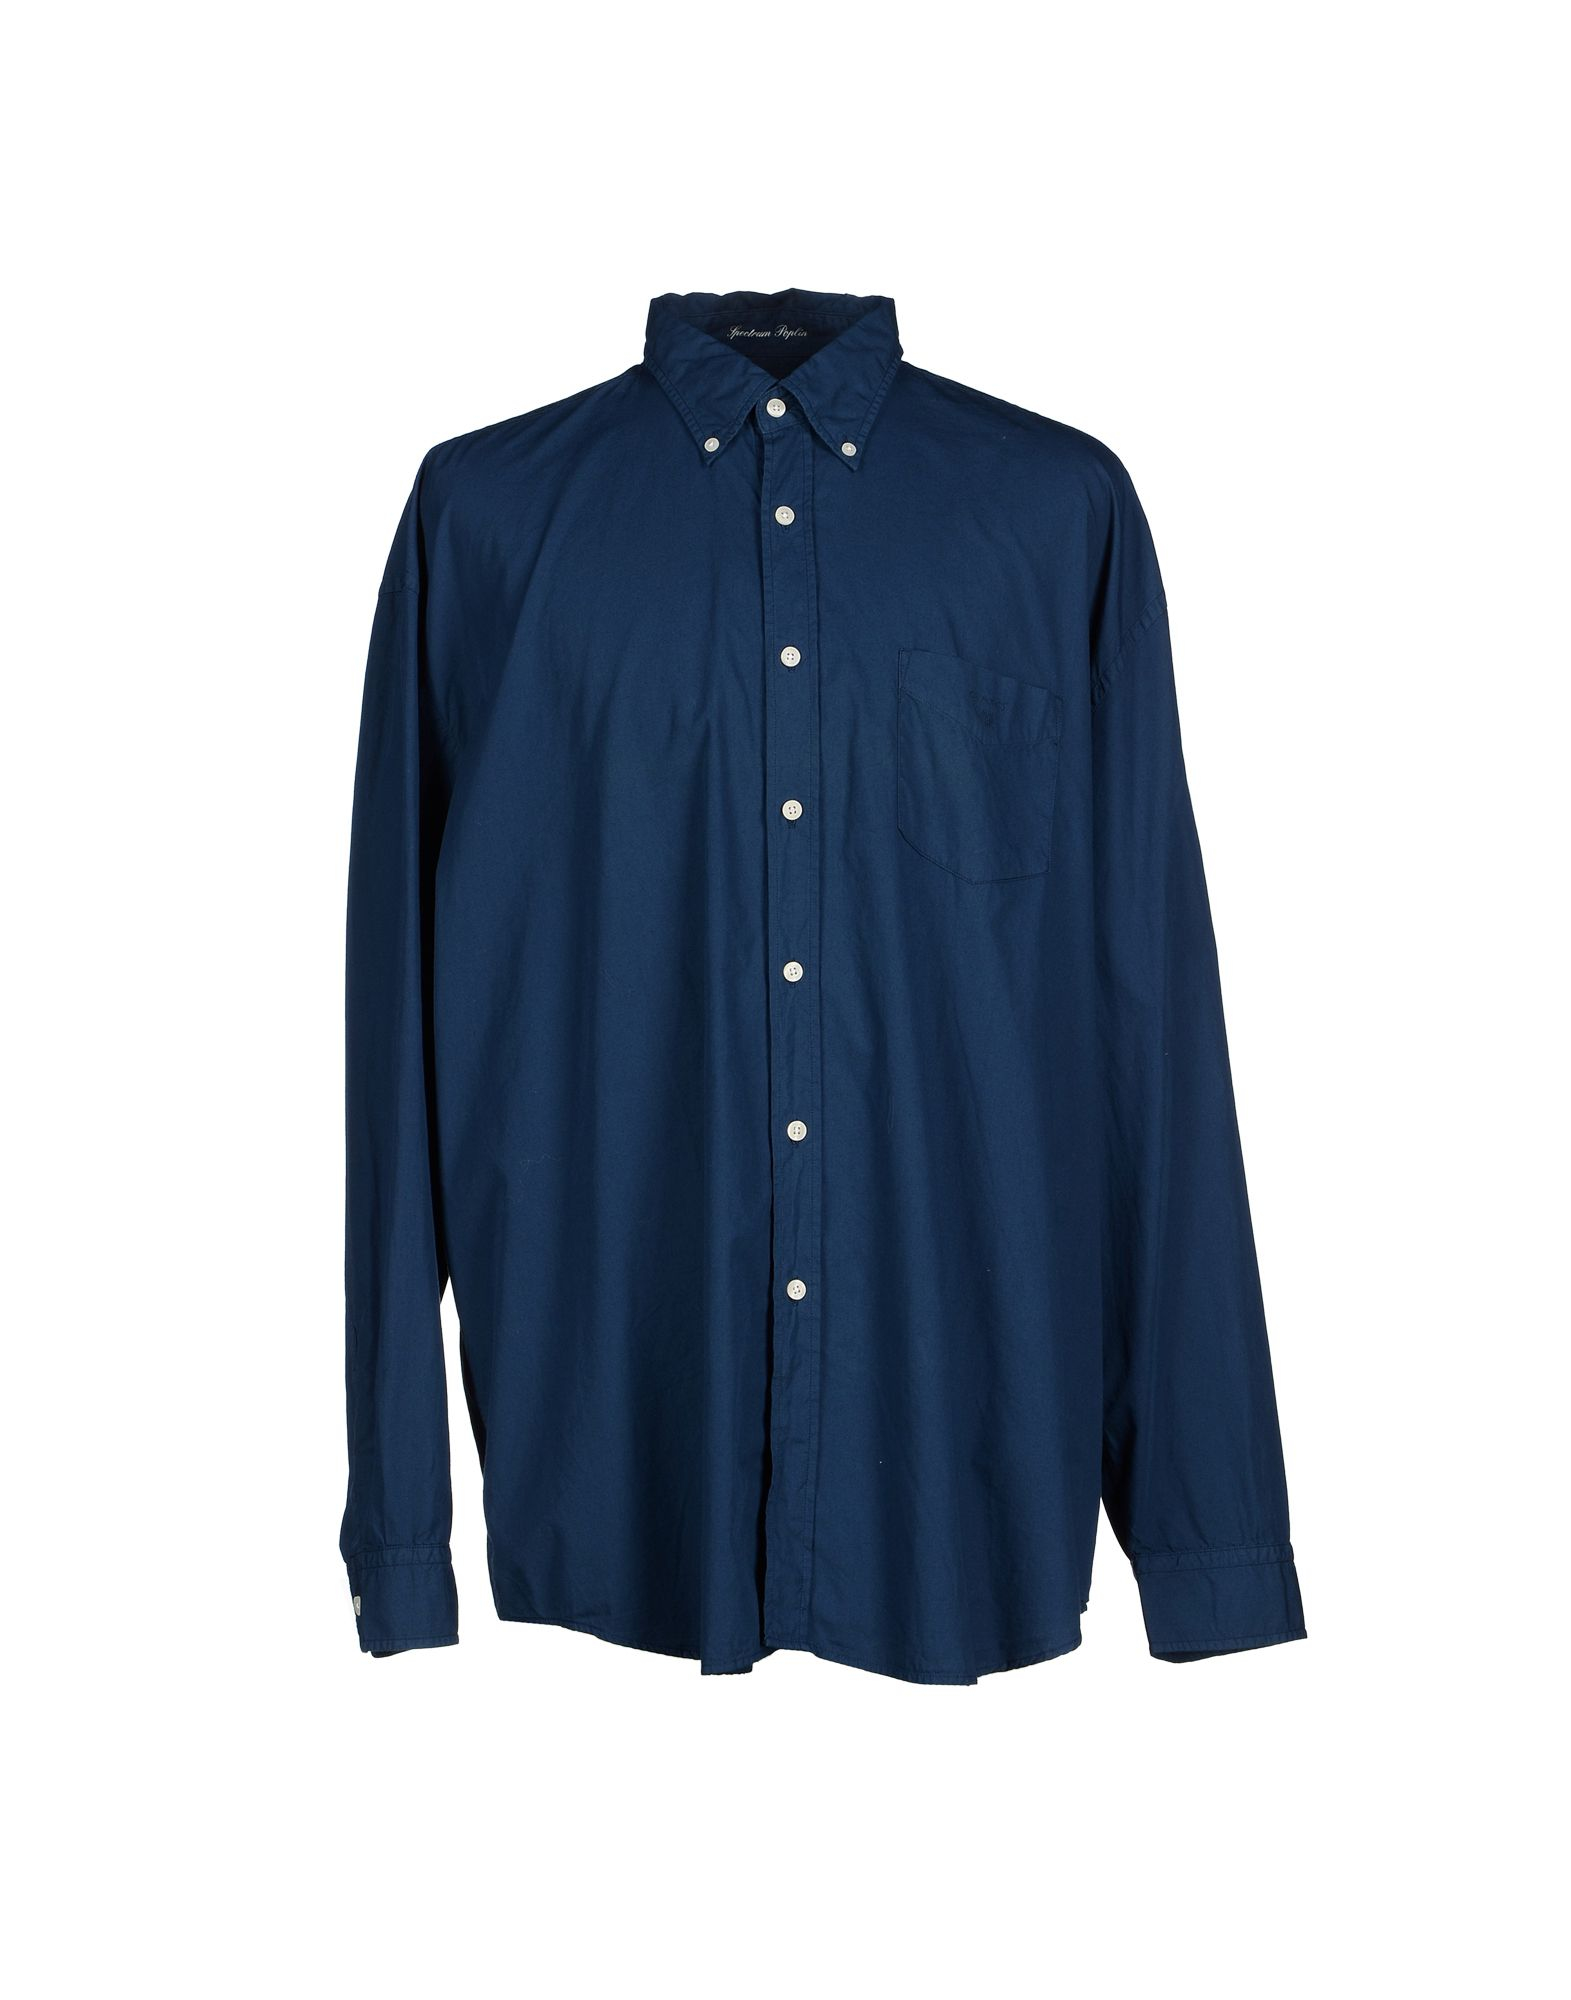 Lyst - Gant Shirt in Blue for Men